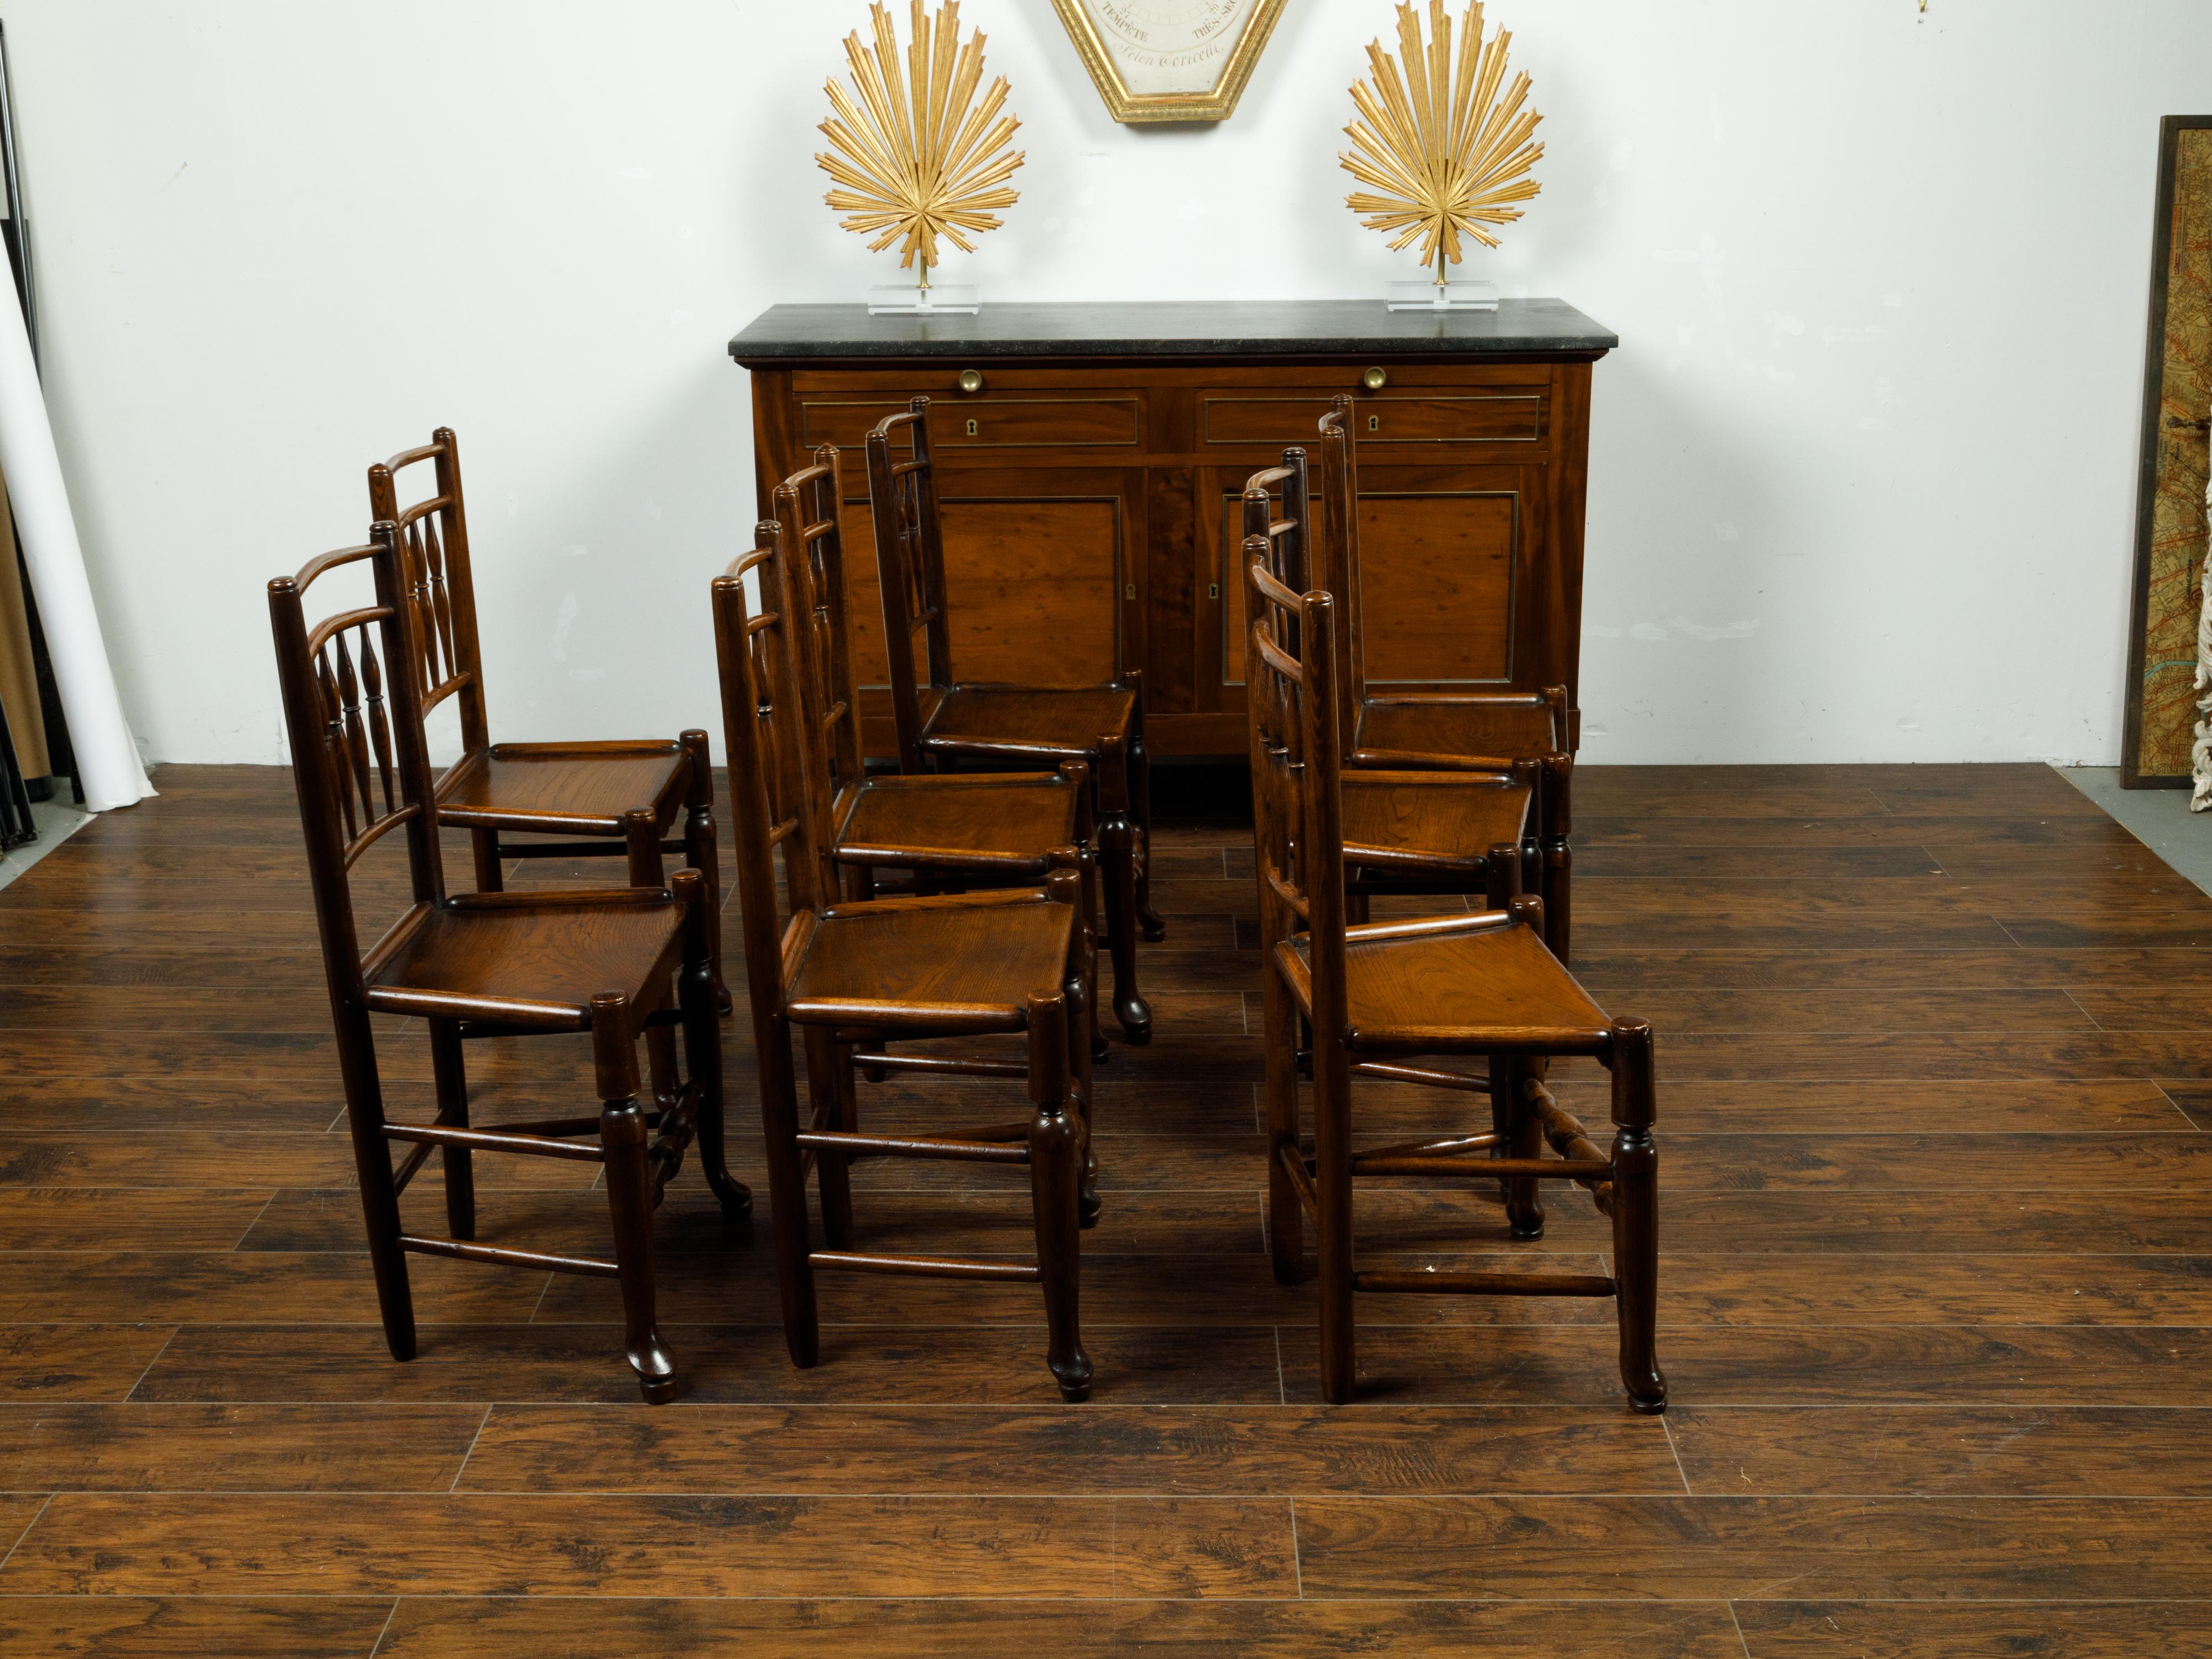 Ein englischer Satz von acht Esszimmerstühlen aus Eiche aus dem späten 19. Jahrhundert, mit Spindelmotiven und Holzsitzen. Dieser Satz von acht Esszimmerstühlen wurde im letzten Viertel des 19. Jahrhunderts in England hergestellt und zeichnet sich